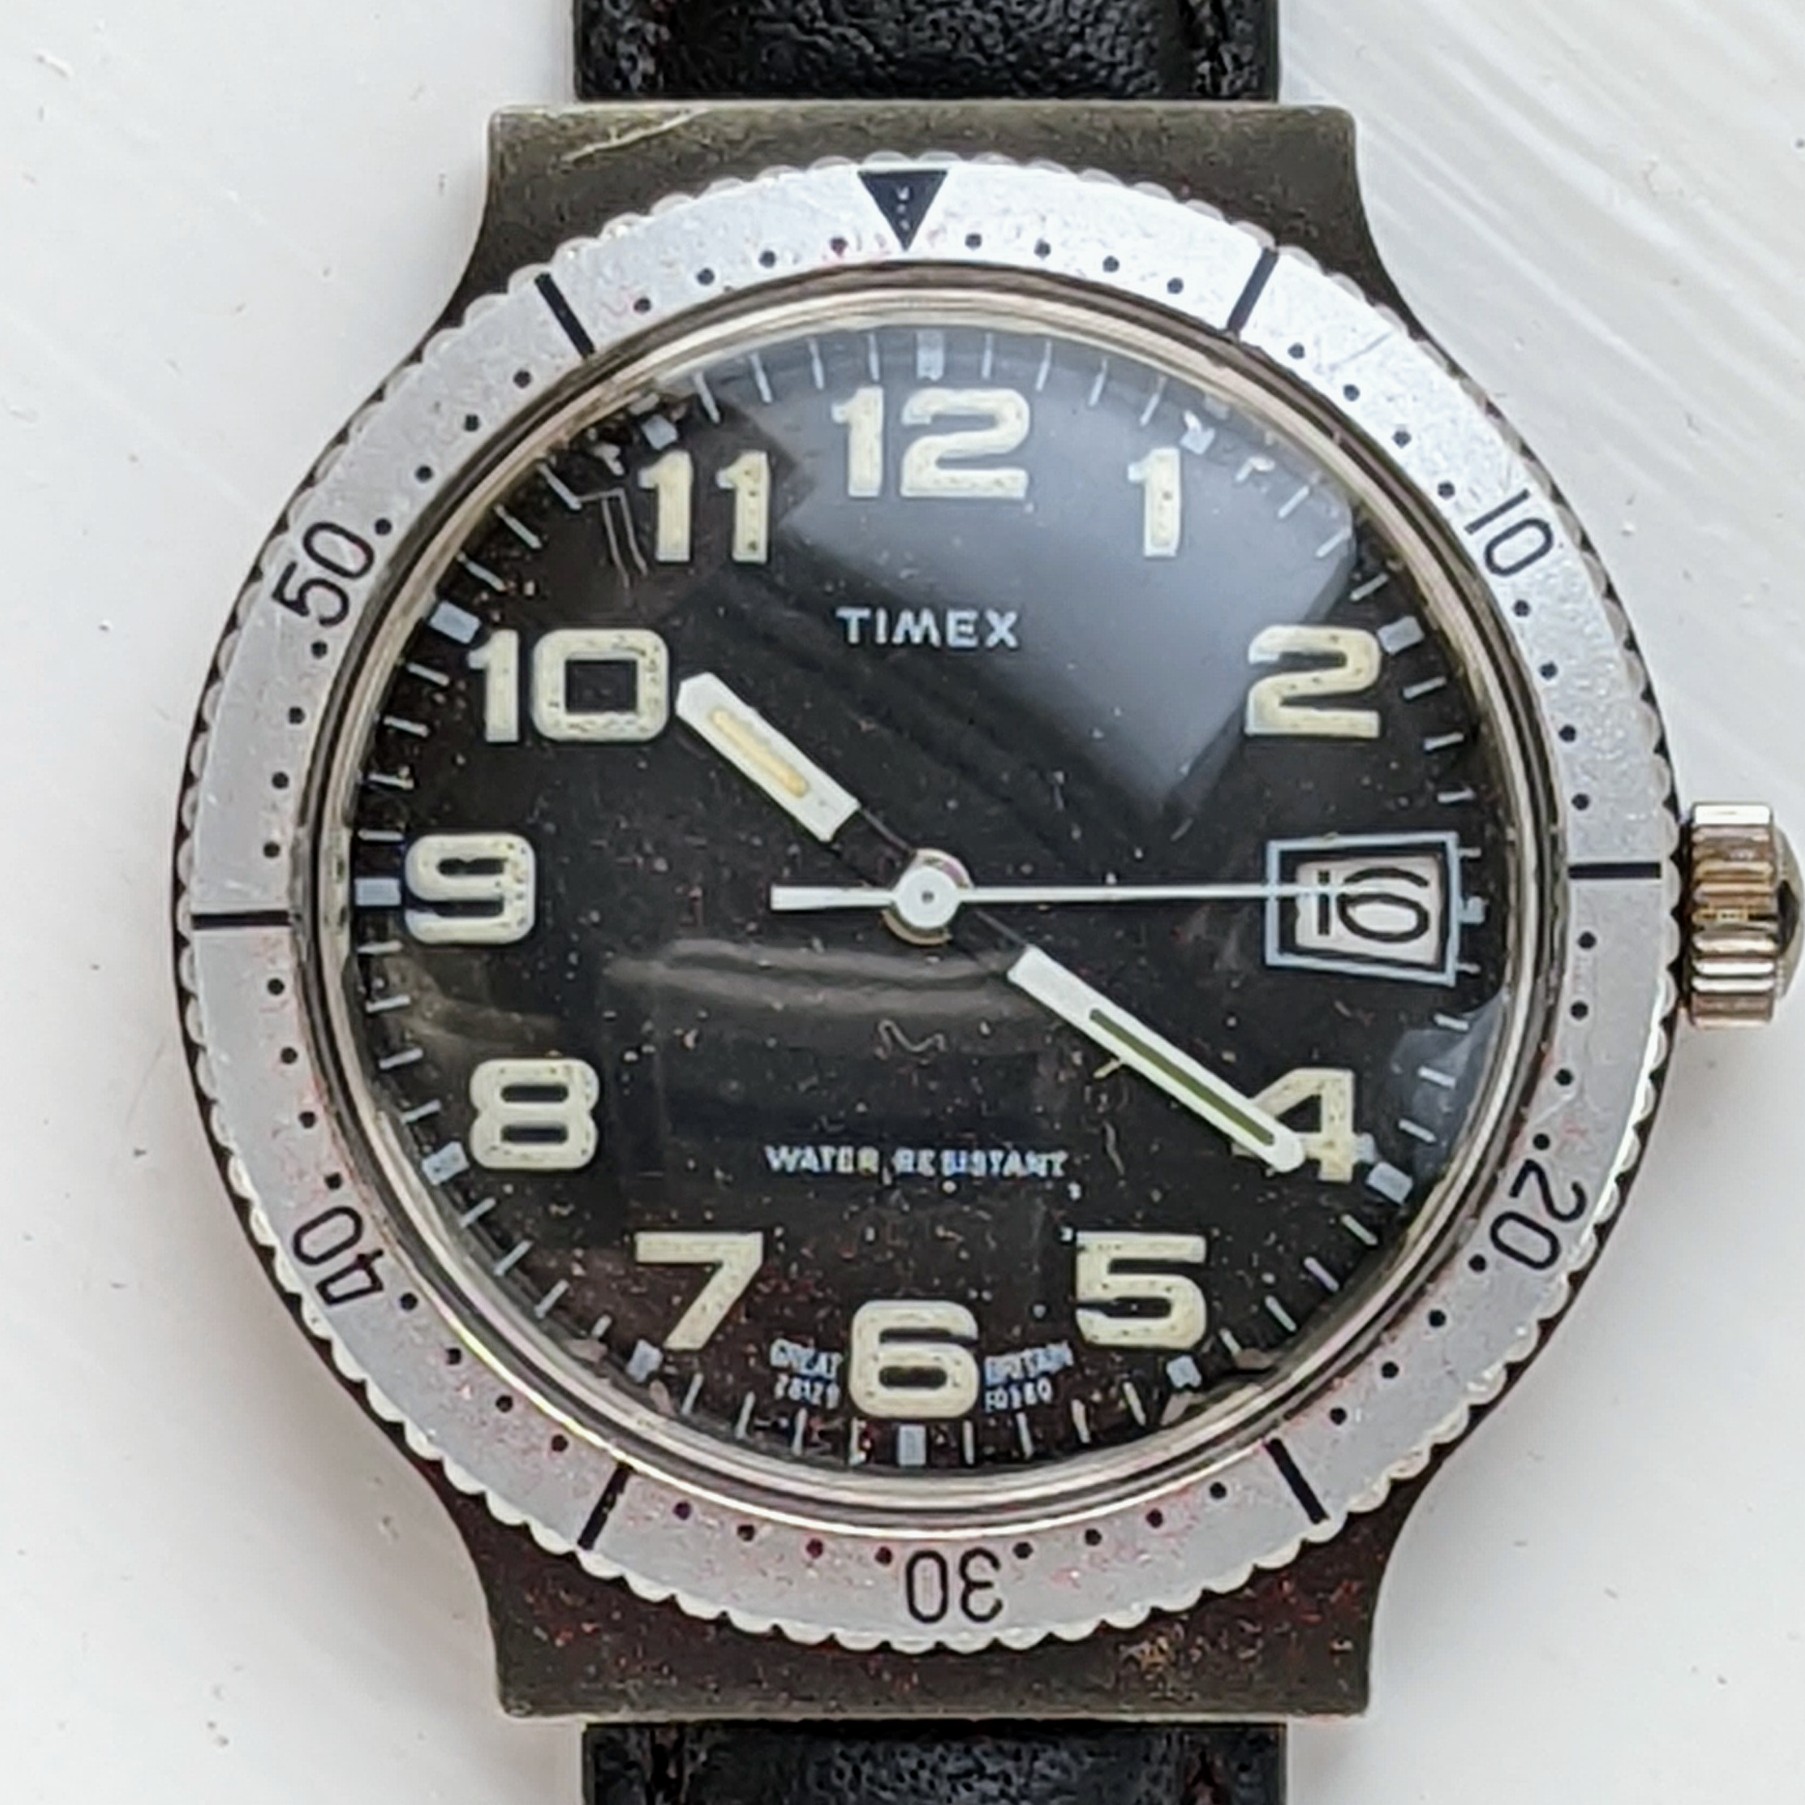 Timex Marlin 281231058 [1980] Dive Watch